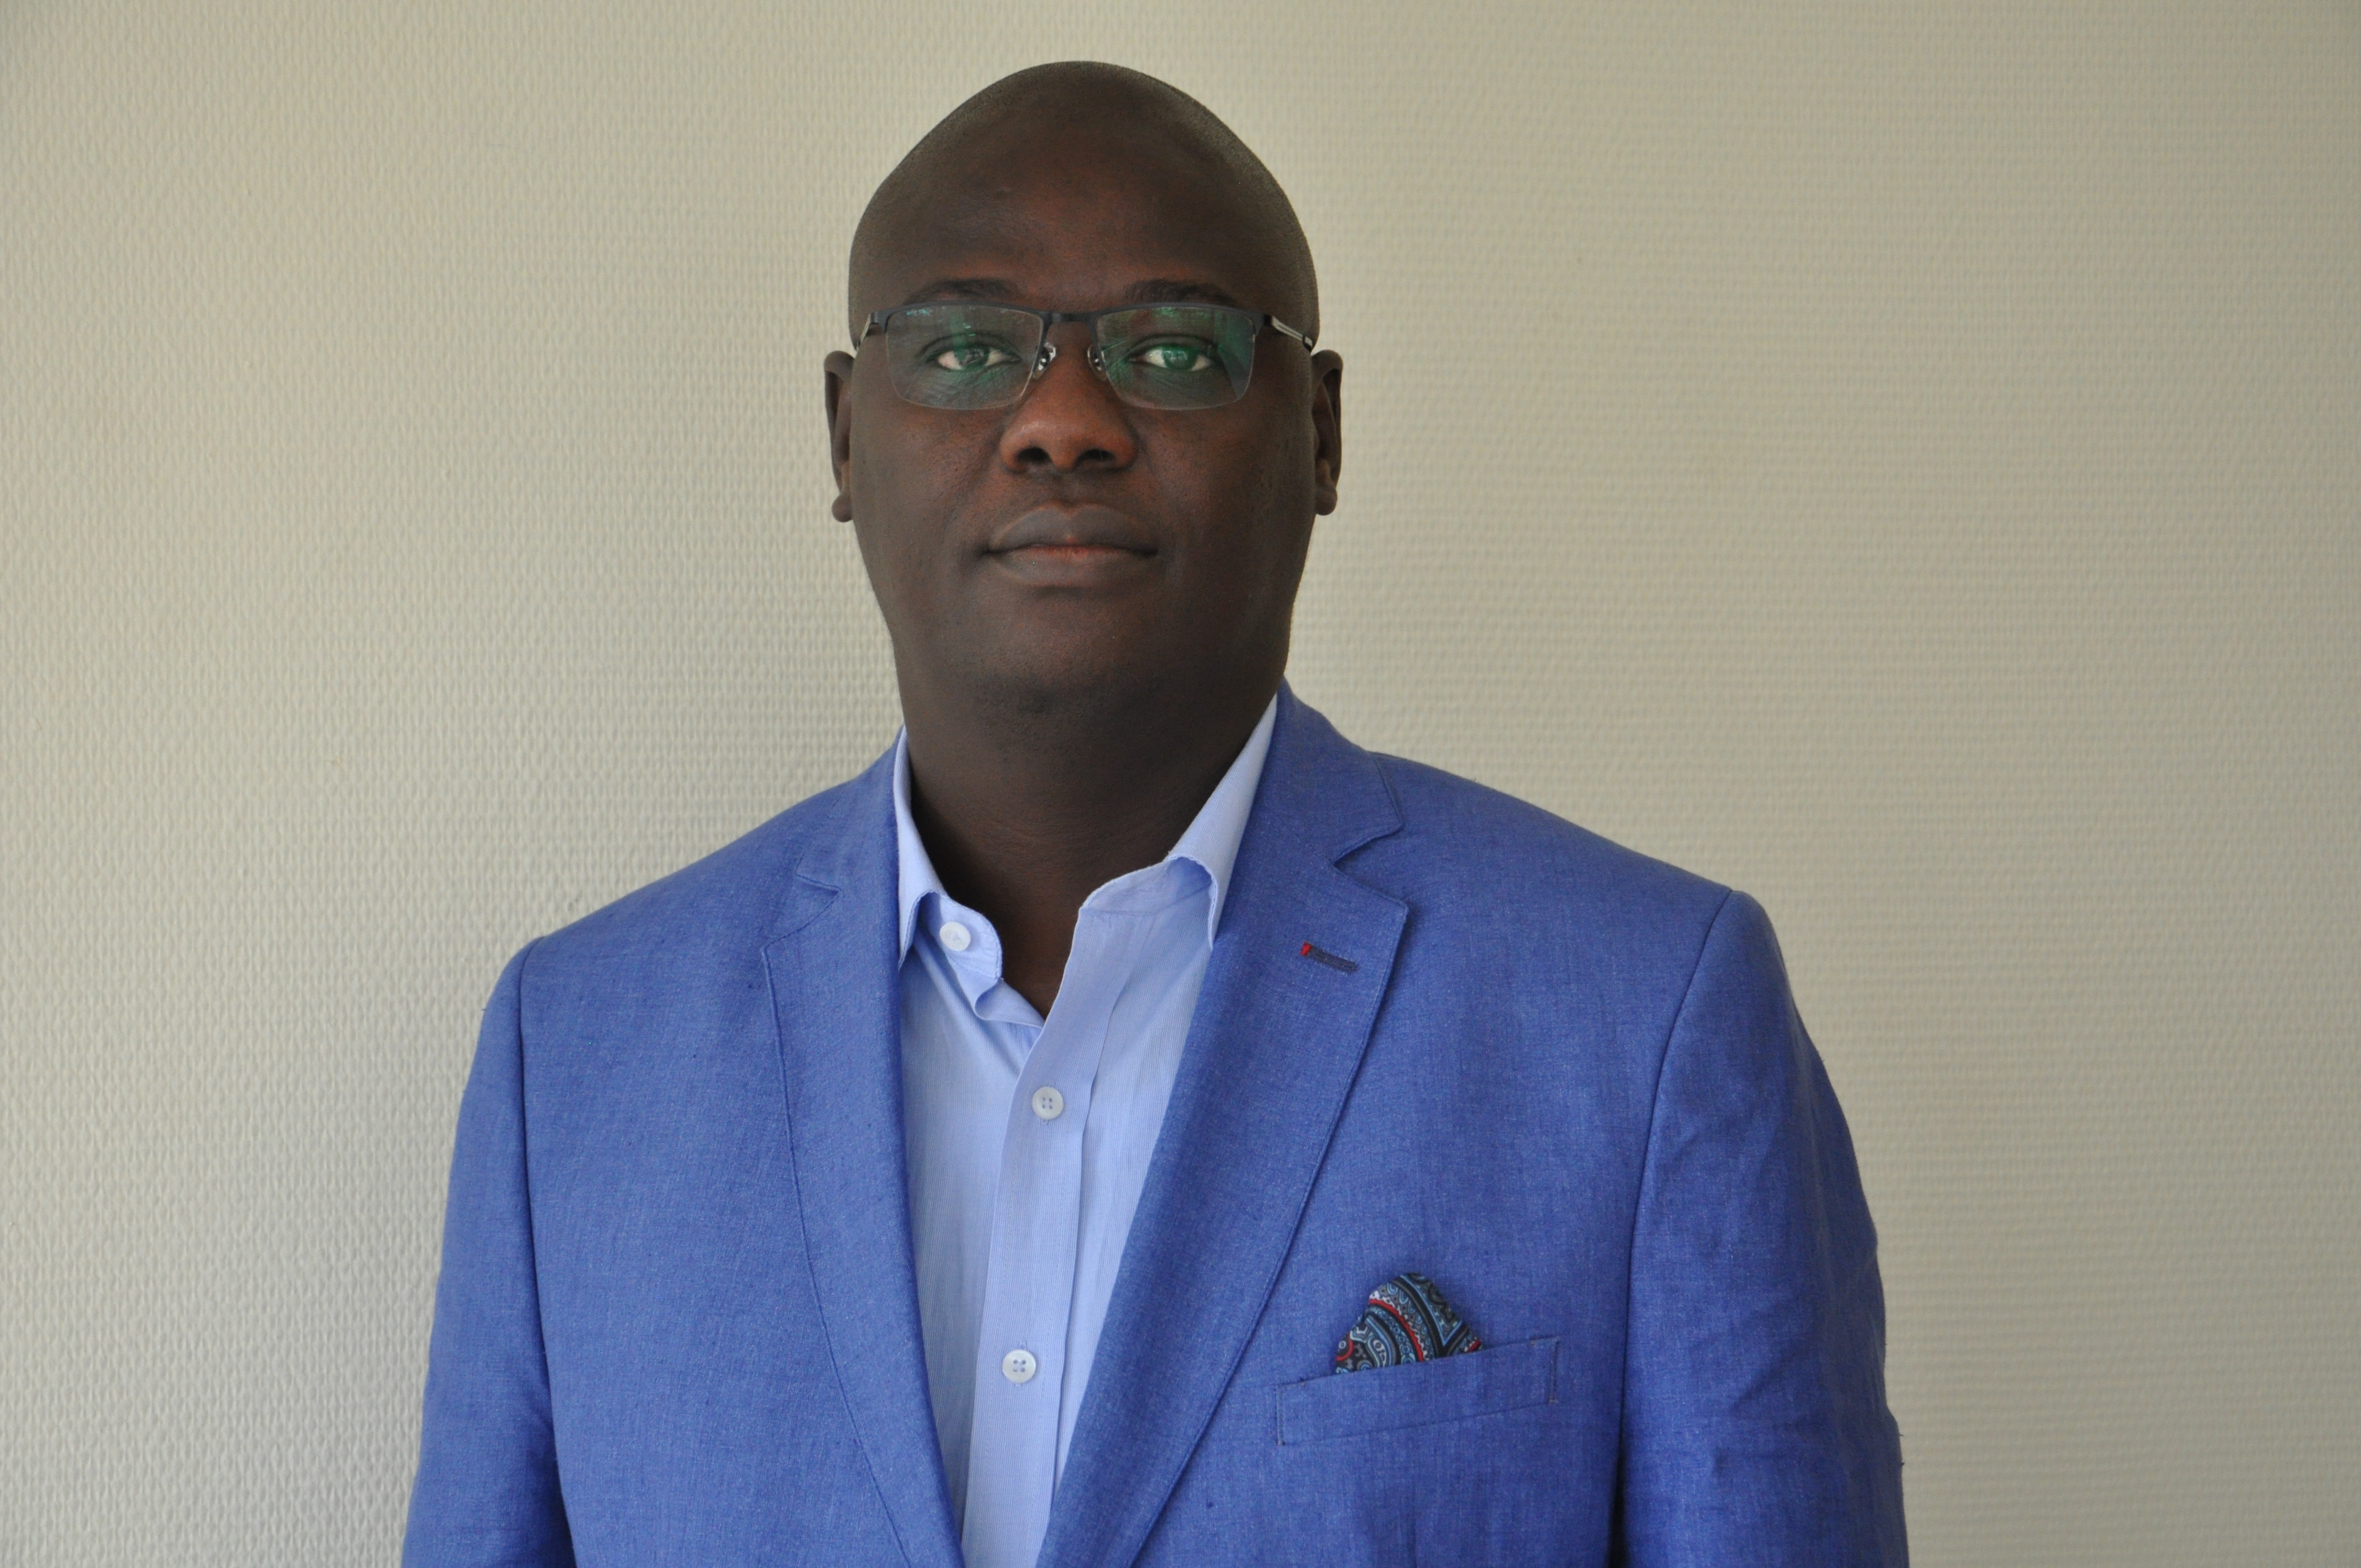 Trois questions à M. Begoto Miarom, pour faire le point sur la corruption en Afrique